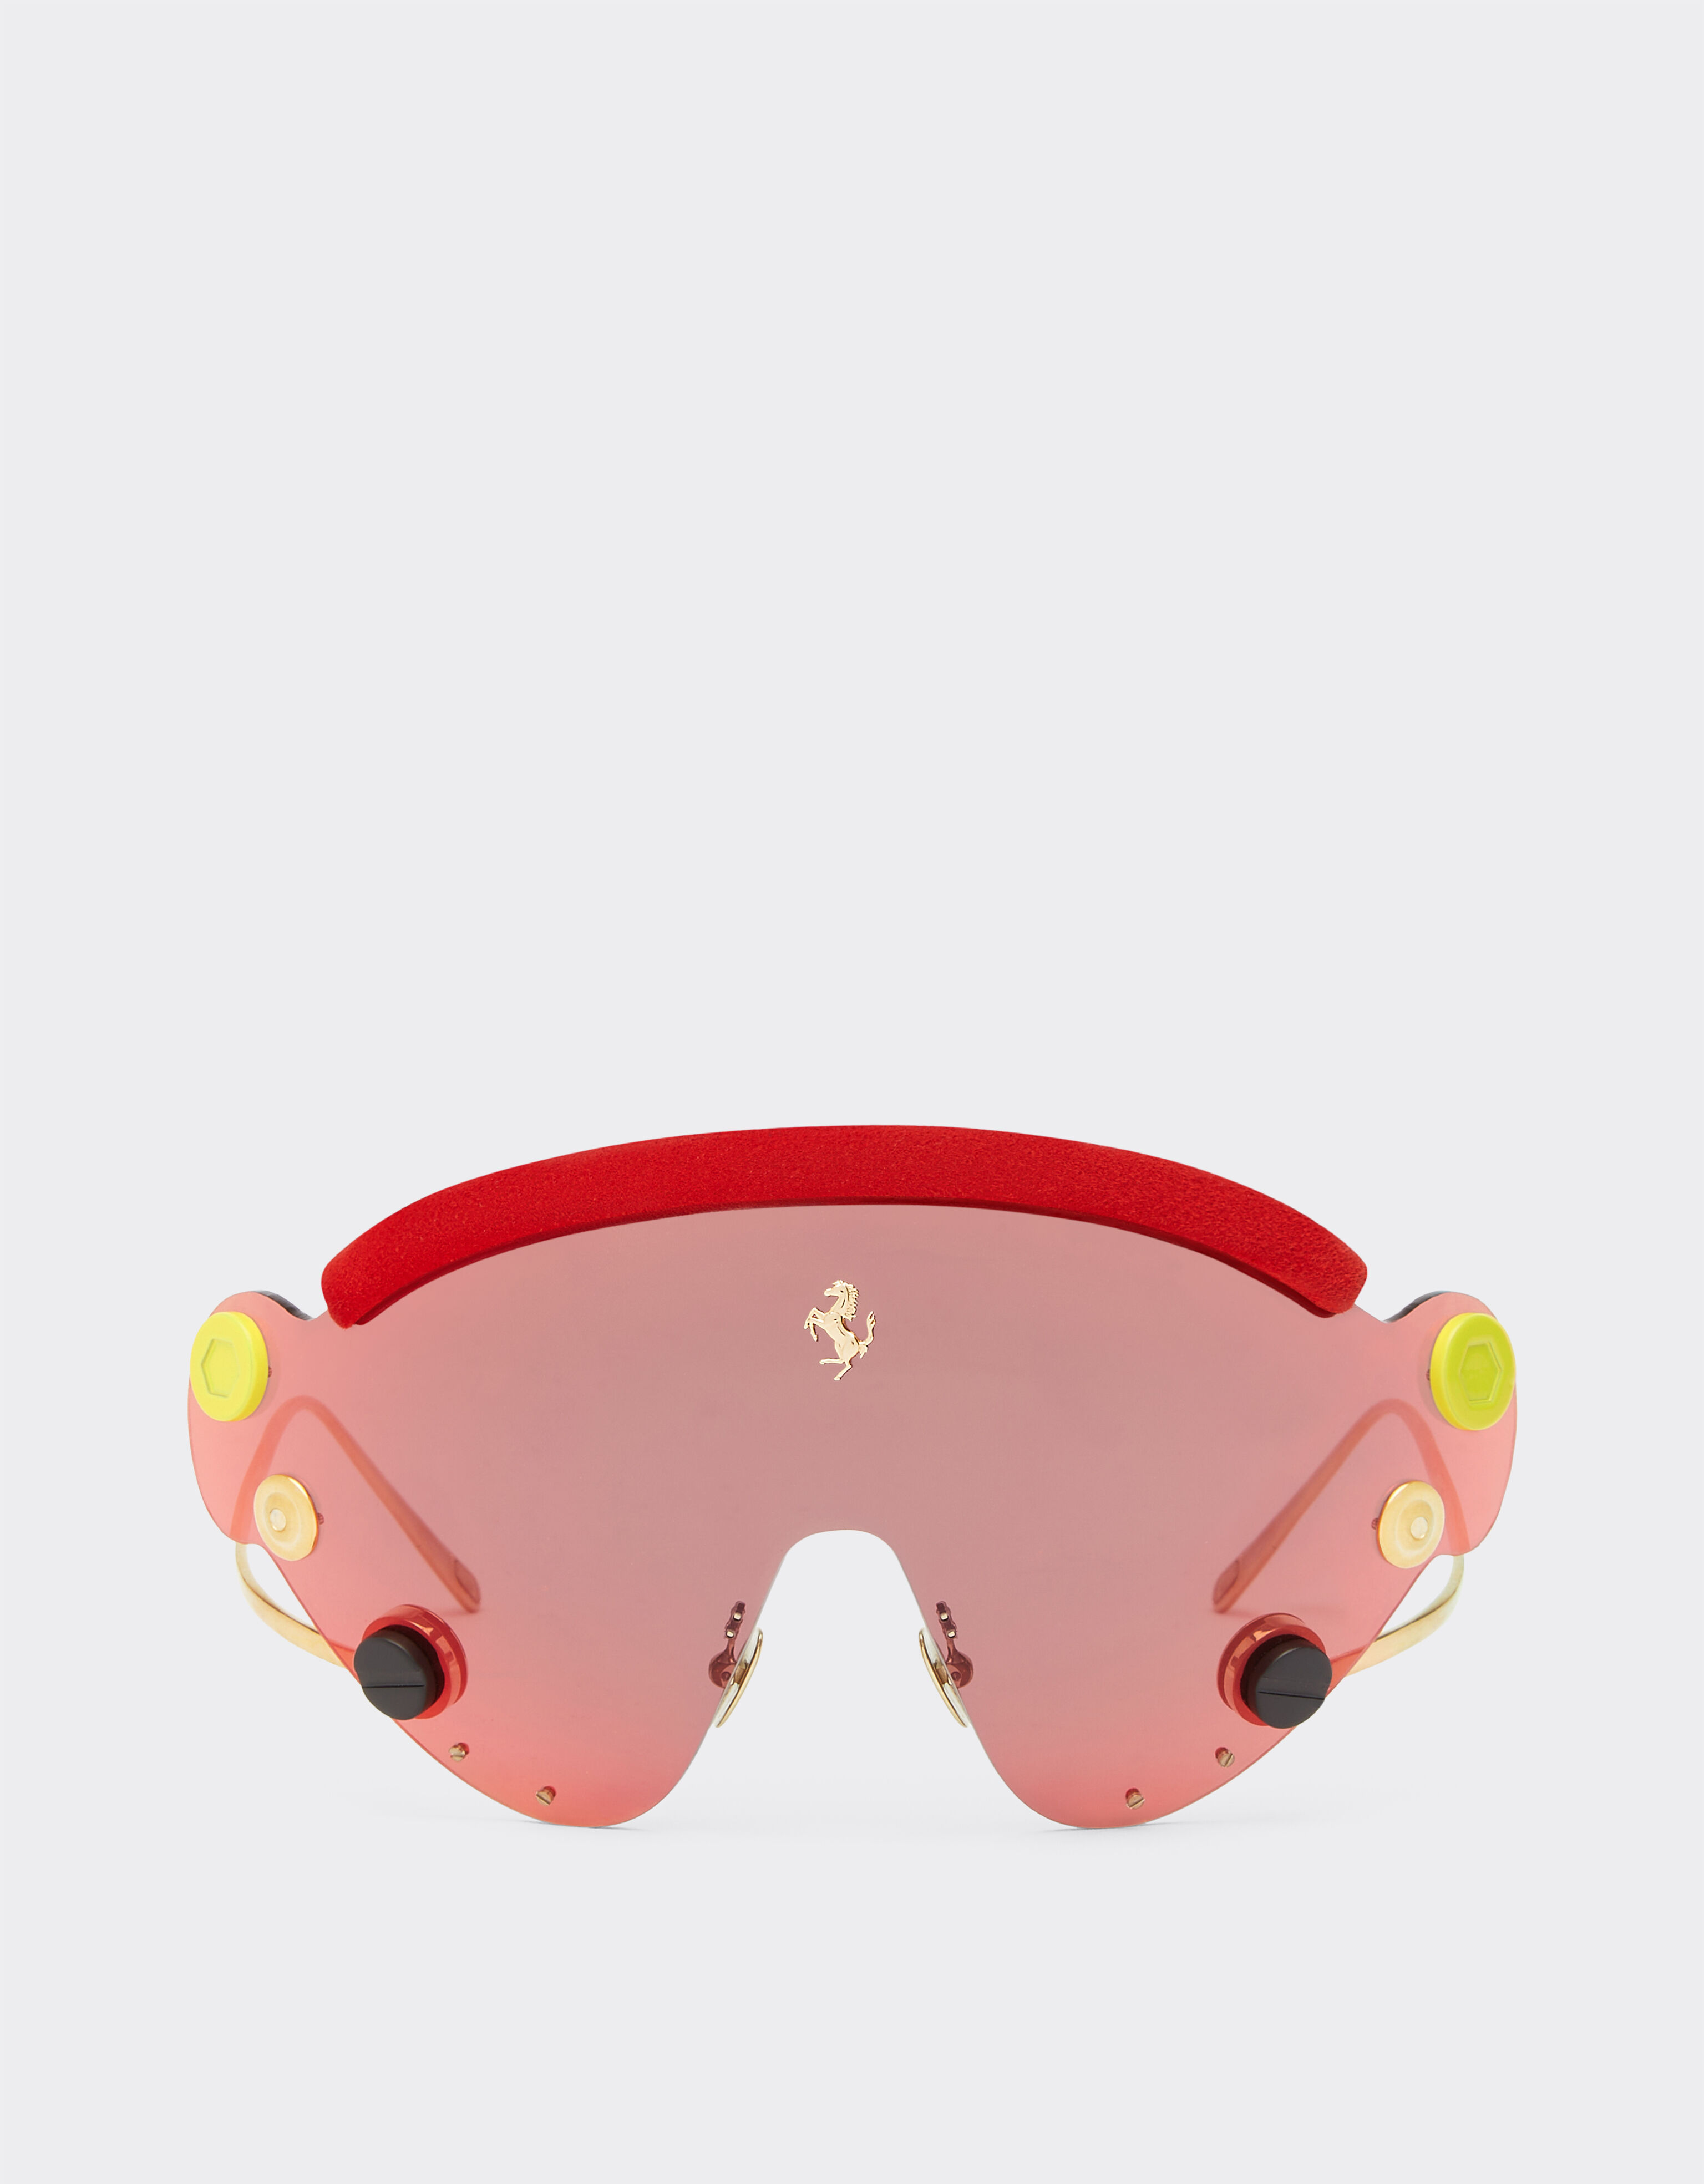 ${brand} Ferrari Limited Edition Sonnenbrille aus rotem und goldfarbenem Metall mit rot verspiegeltem Shield ${colorDescription} ${masterID}